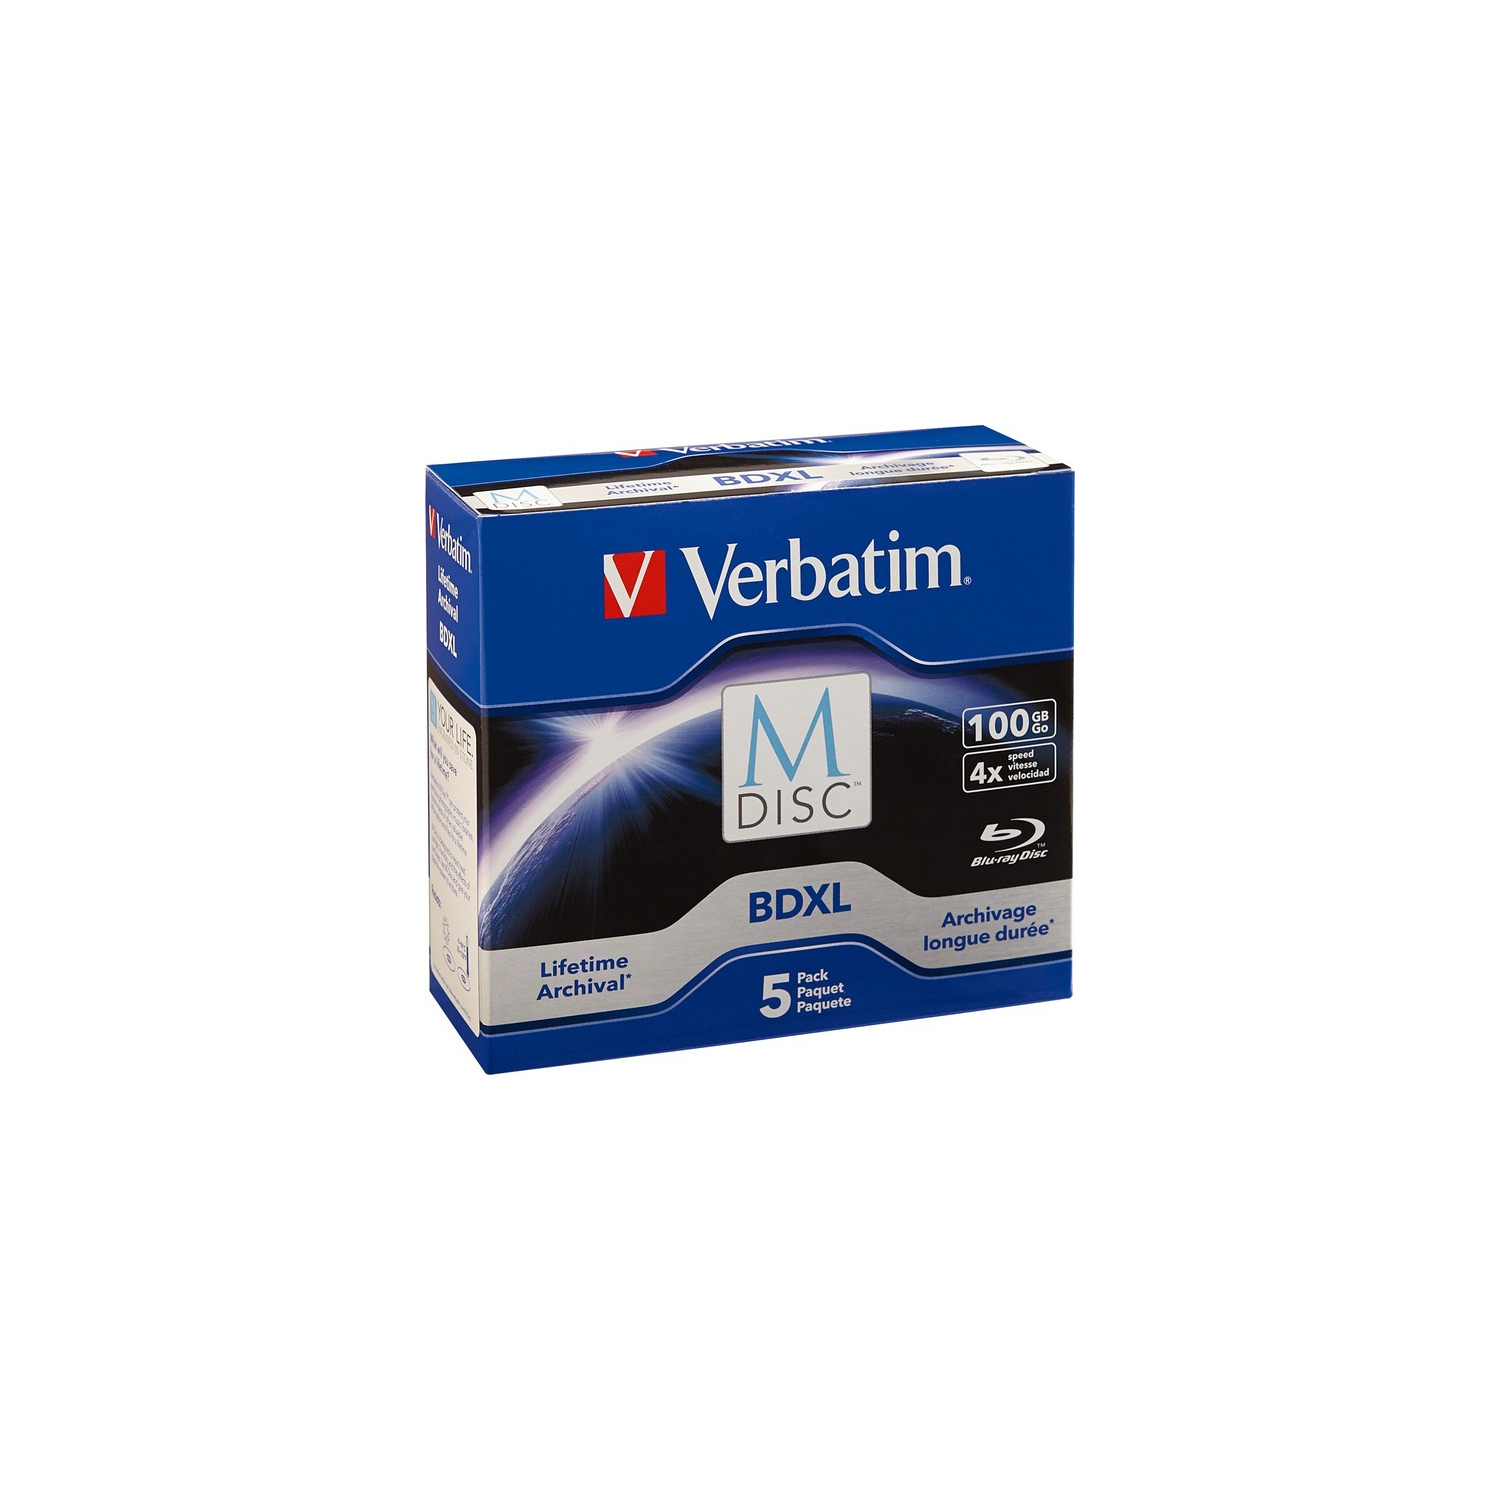 Verbatim Blu-ray Recordable Media - BD-R XL - 4x - 100GB - 5 Pack Jewel Case